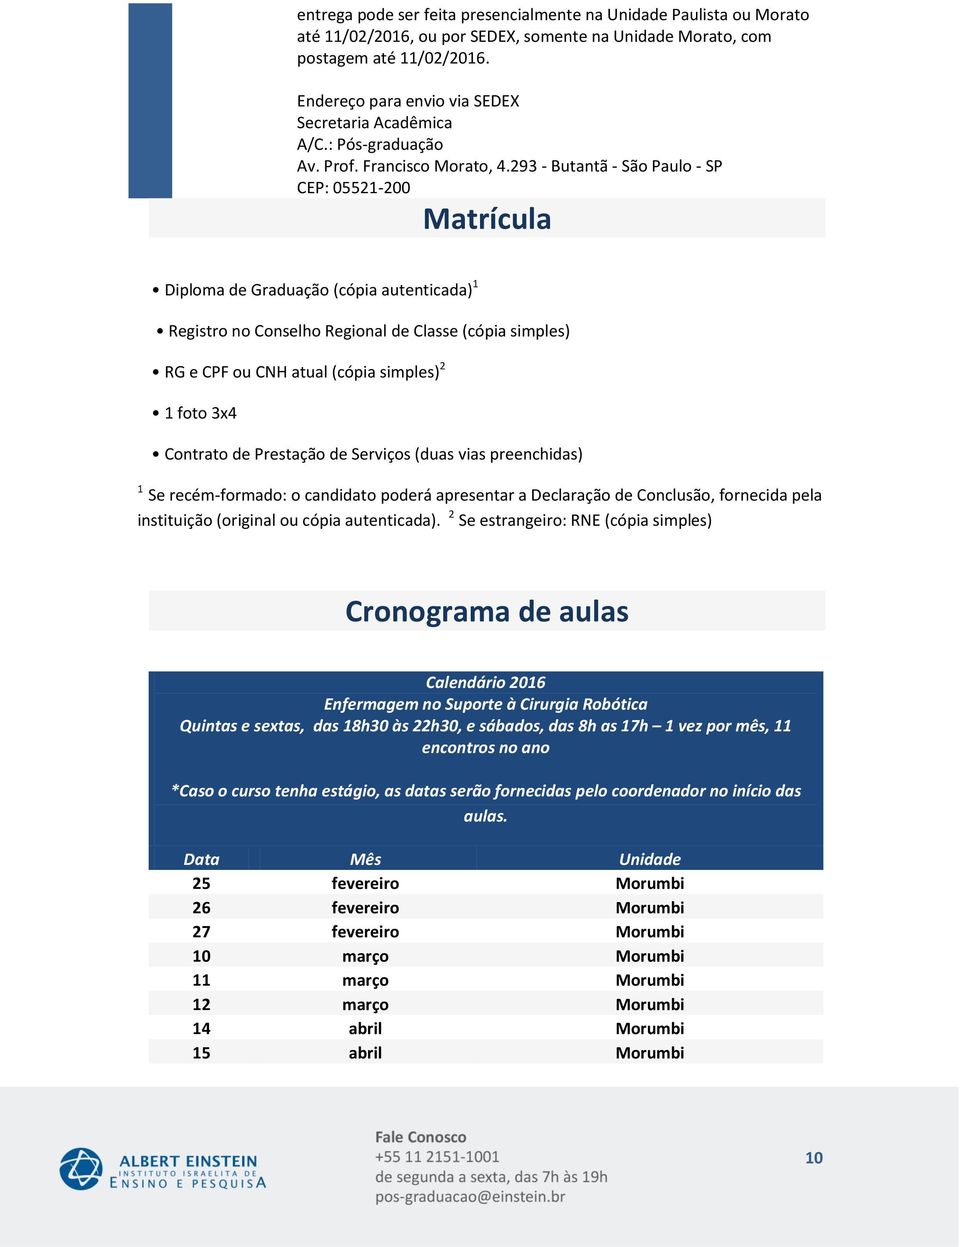 293 - Butantã - São Paulo - SP CEP: 05521- Matrícula Diploma de Graduação (cópia autenticada) Registro no Conselho Regional de Classe (cópia simples) RG e CPF ou CNH atual (cópia simples) foto x4